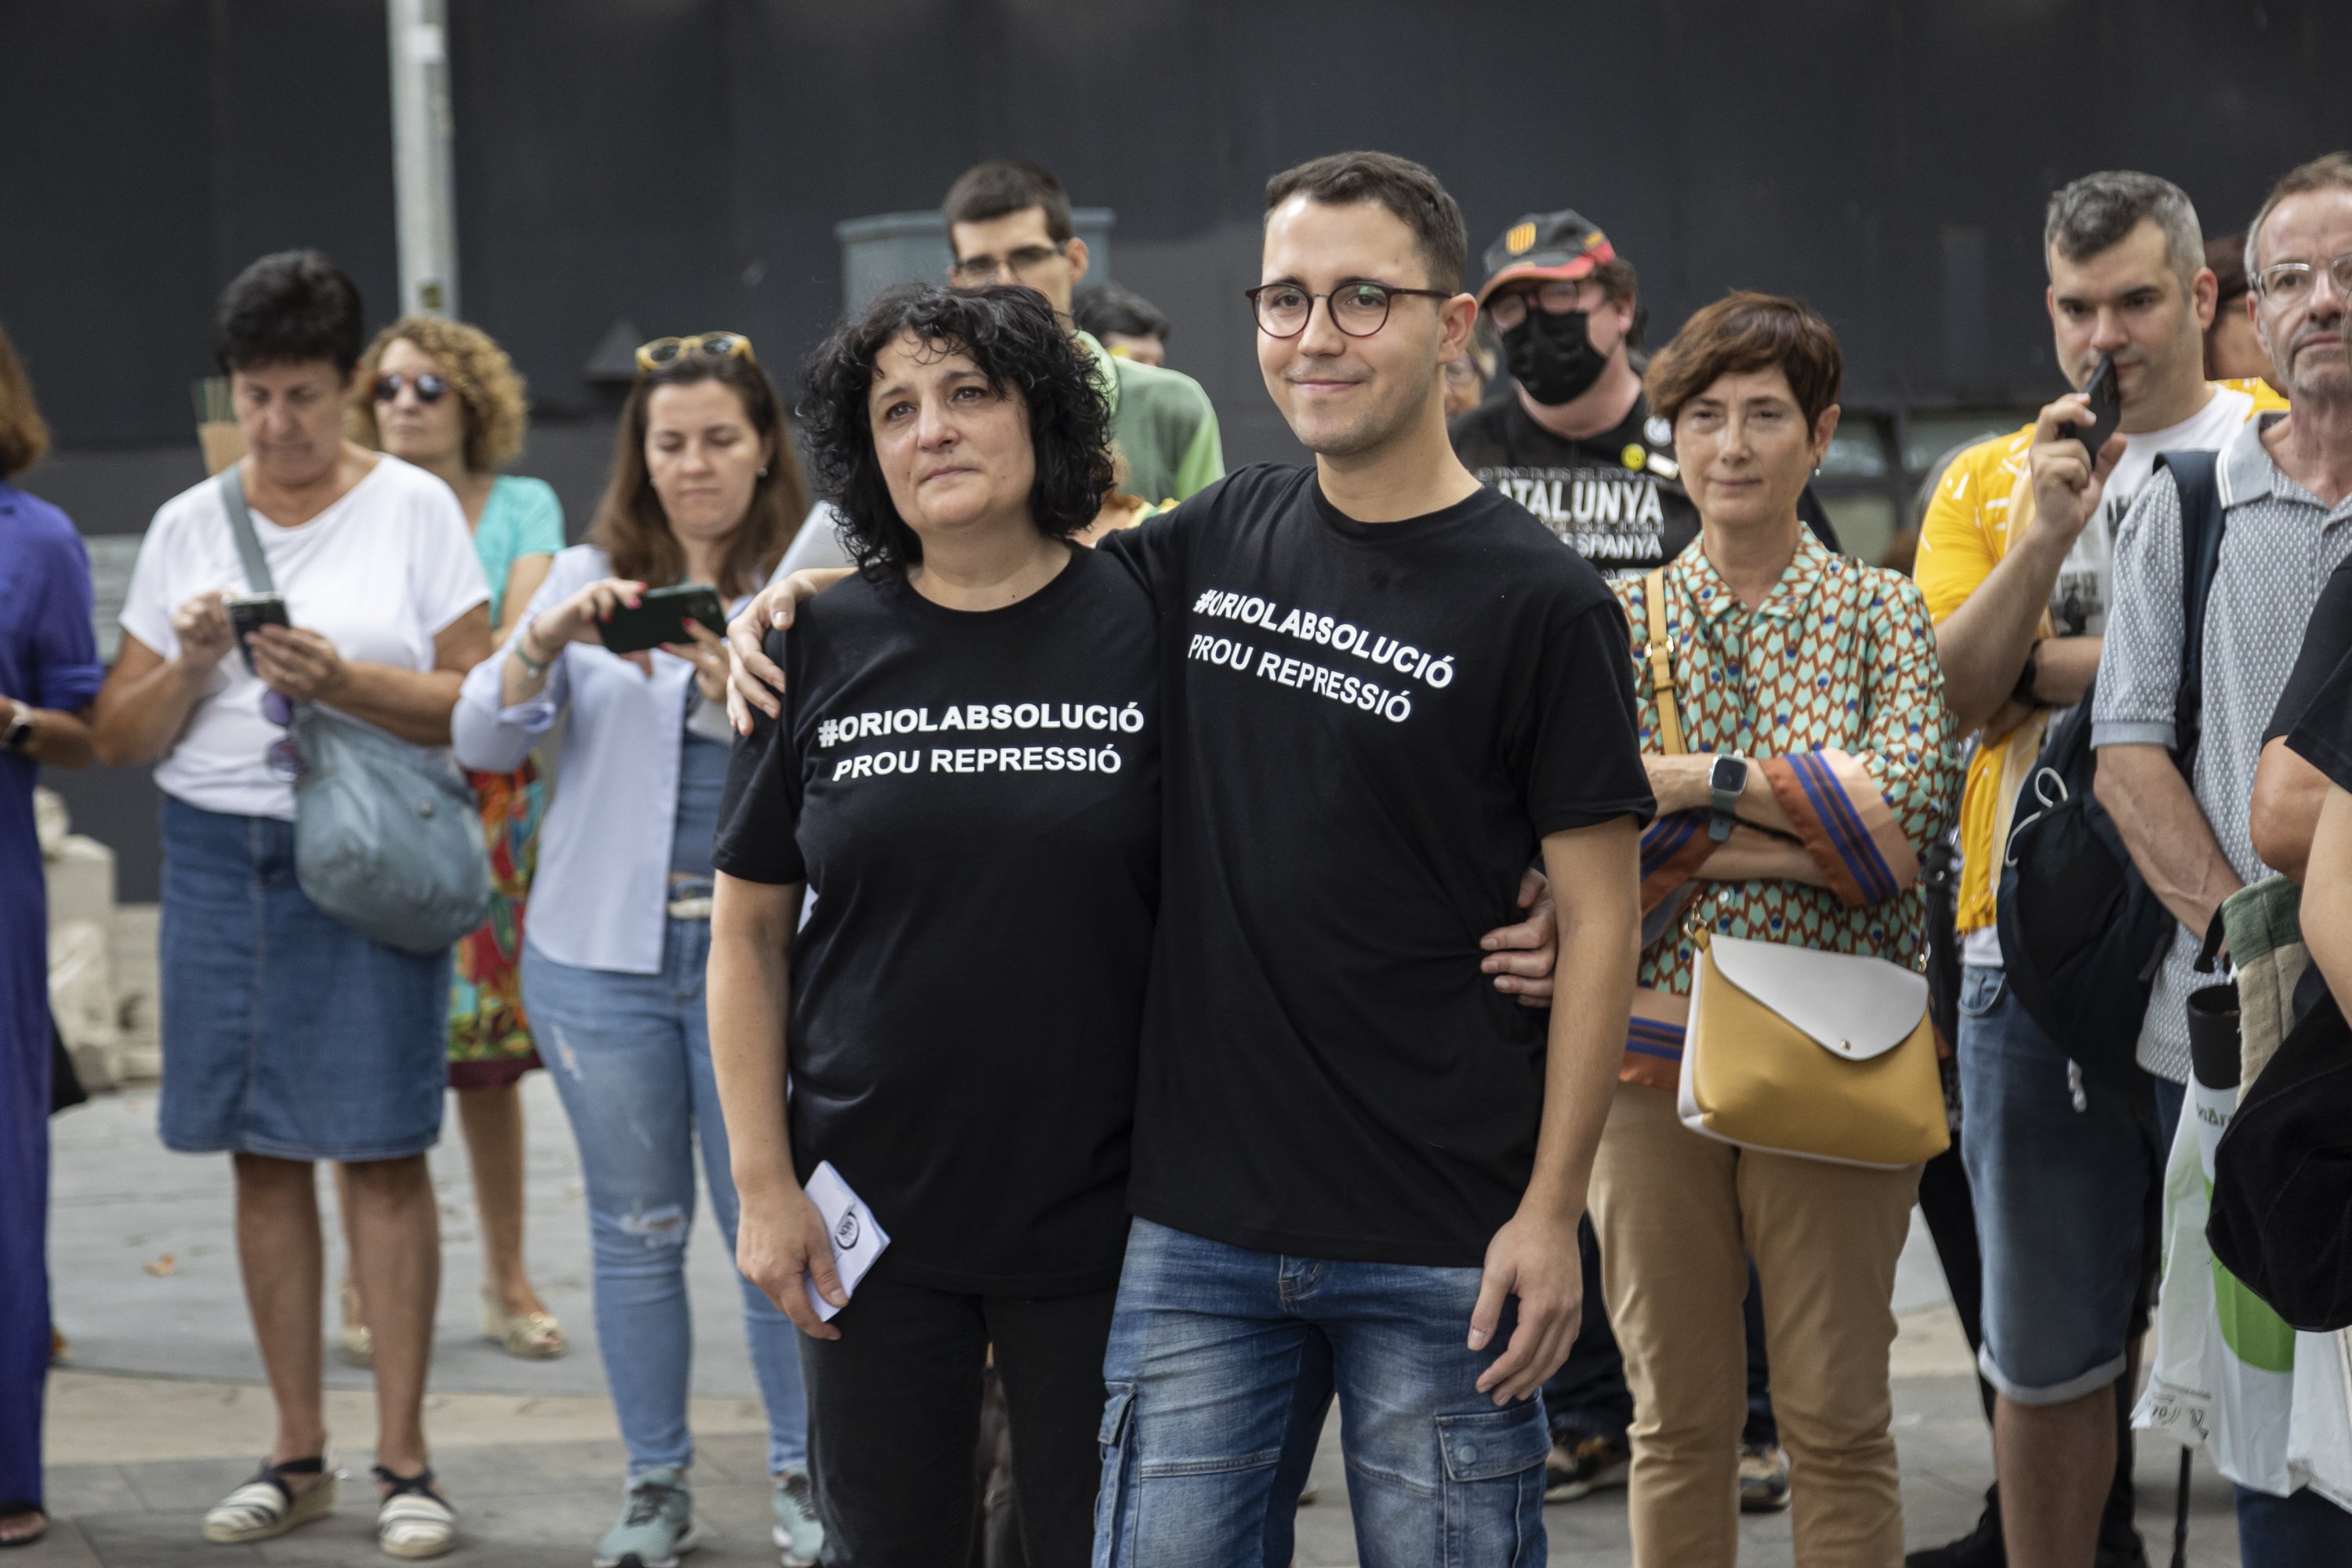 Acto de apoyo a Oriol Calvo, independentista condenado a 4 años de prisión: "Ningún joven se quedará solo"